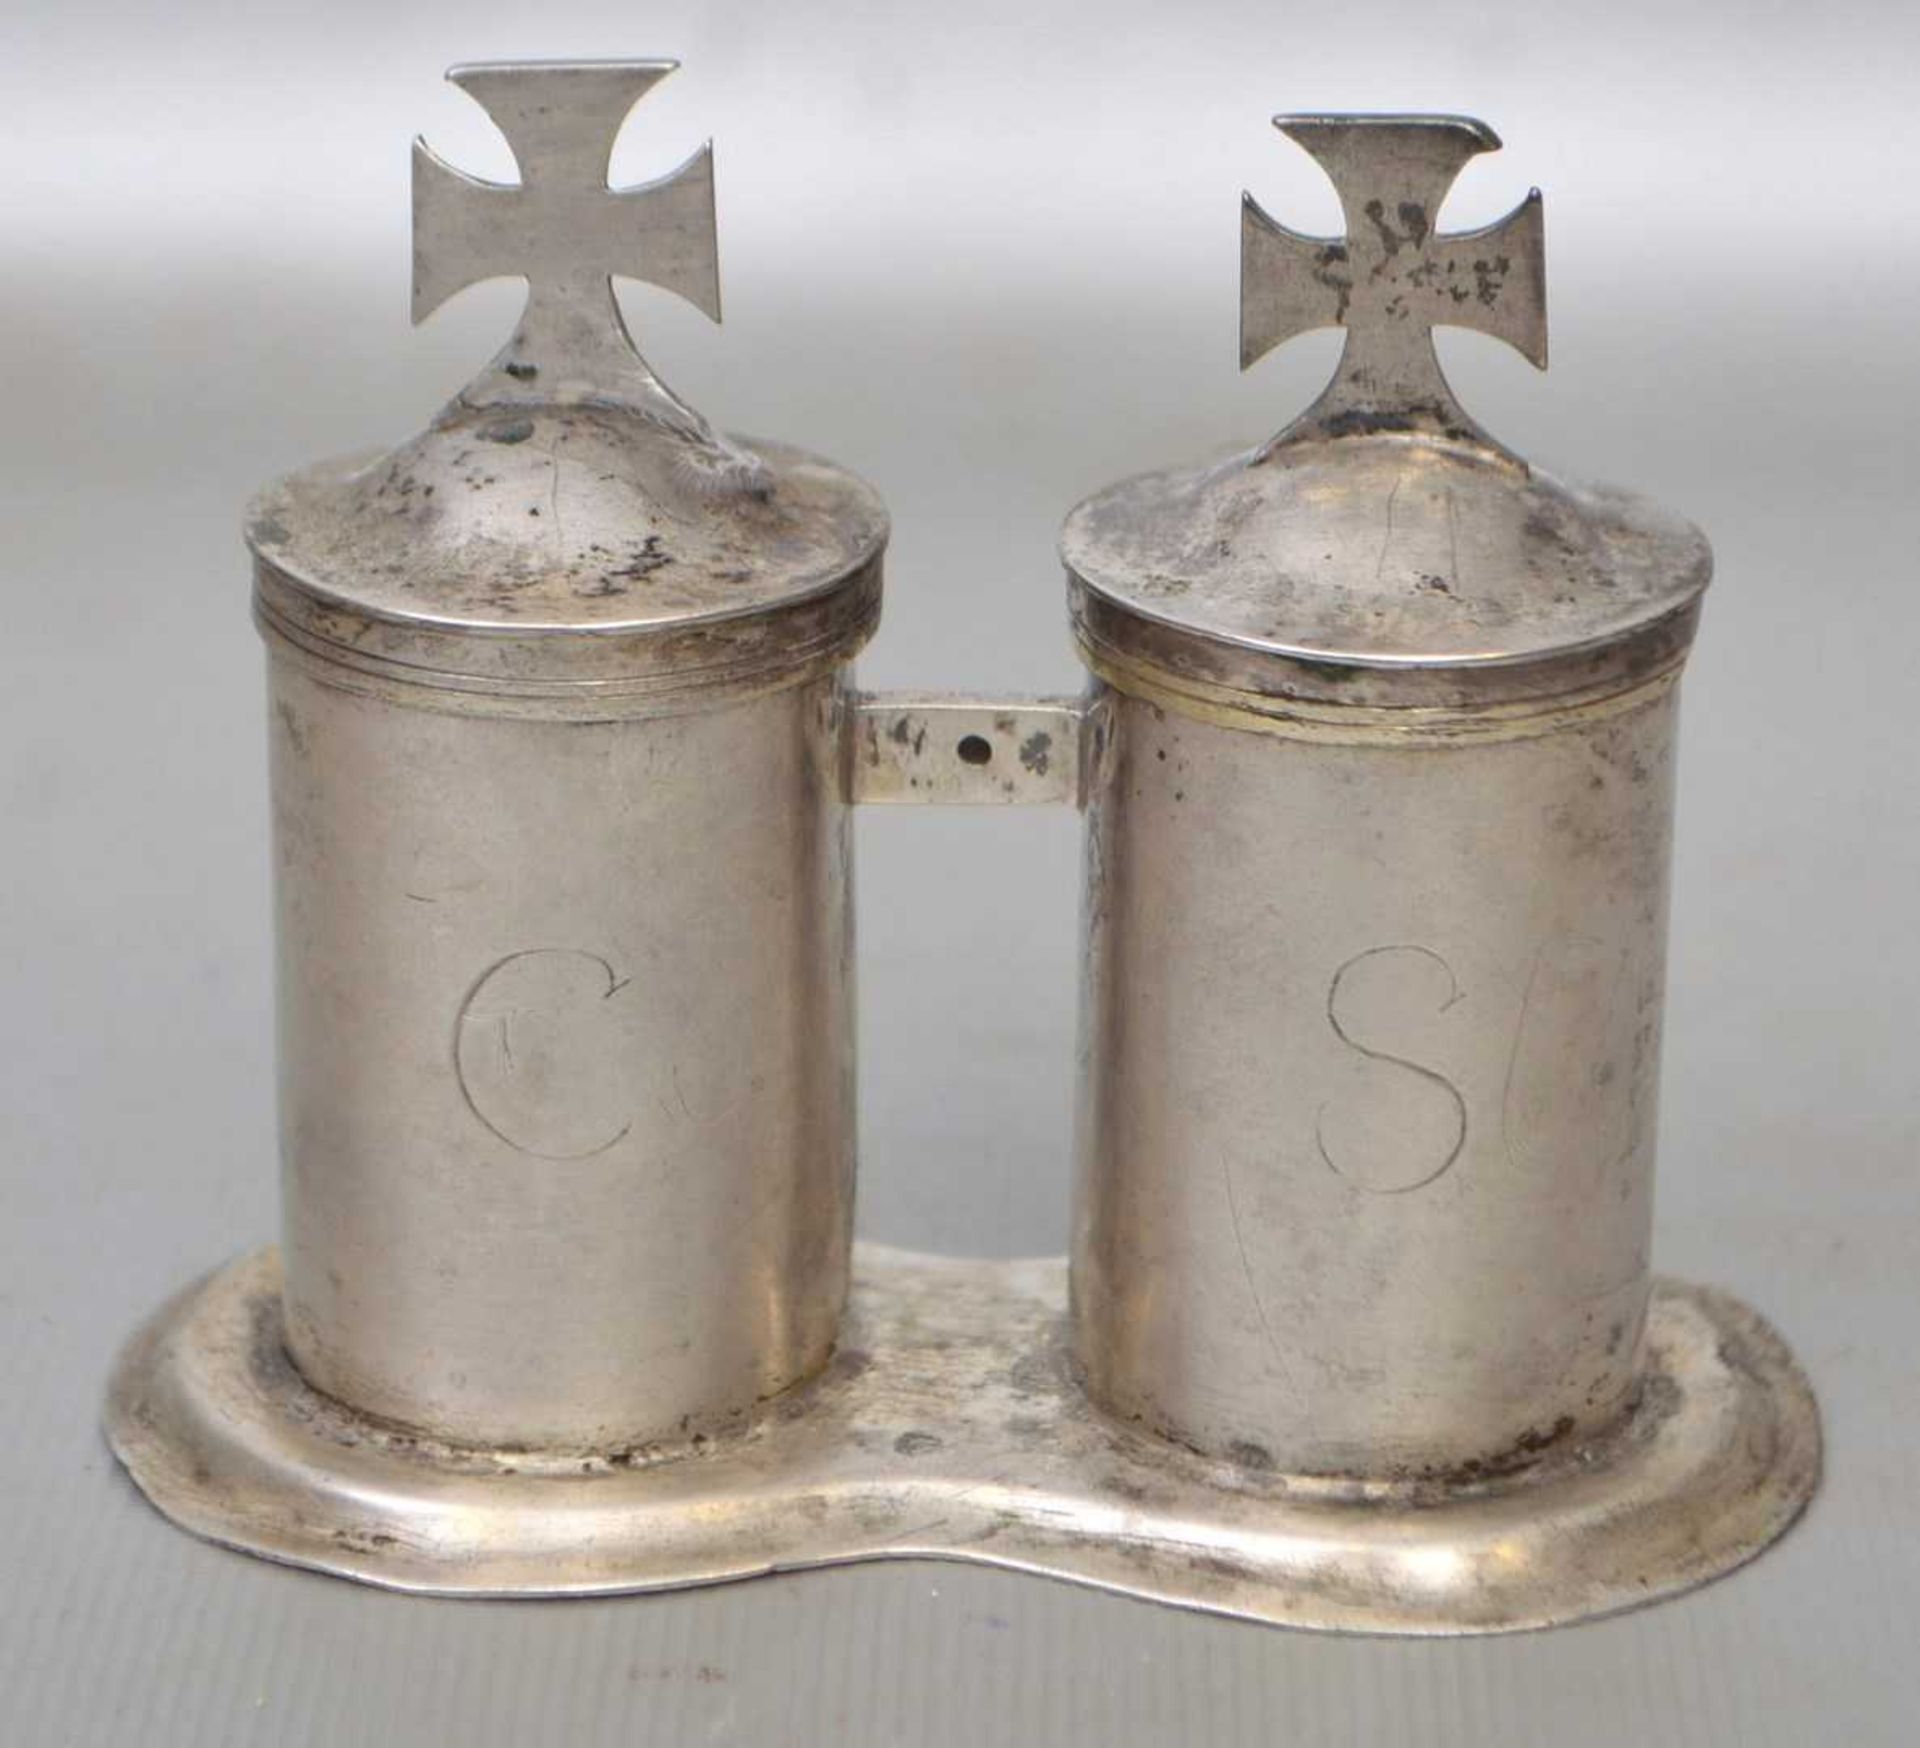 Salbgefäß zwei zylindrische Behälter, innen vergoldet, Deckel mit Kreuz, im Boden gepunzt, 13-lötig,